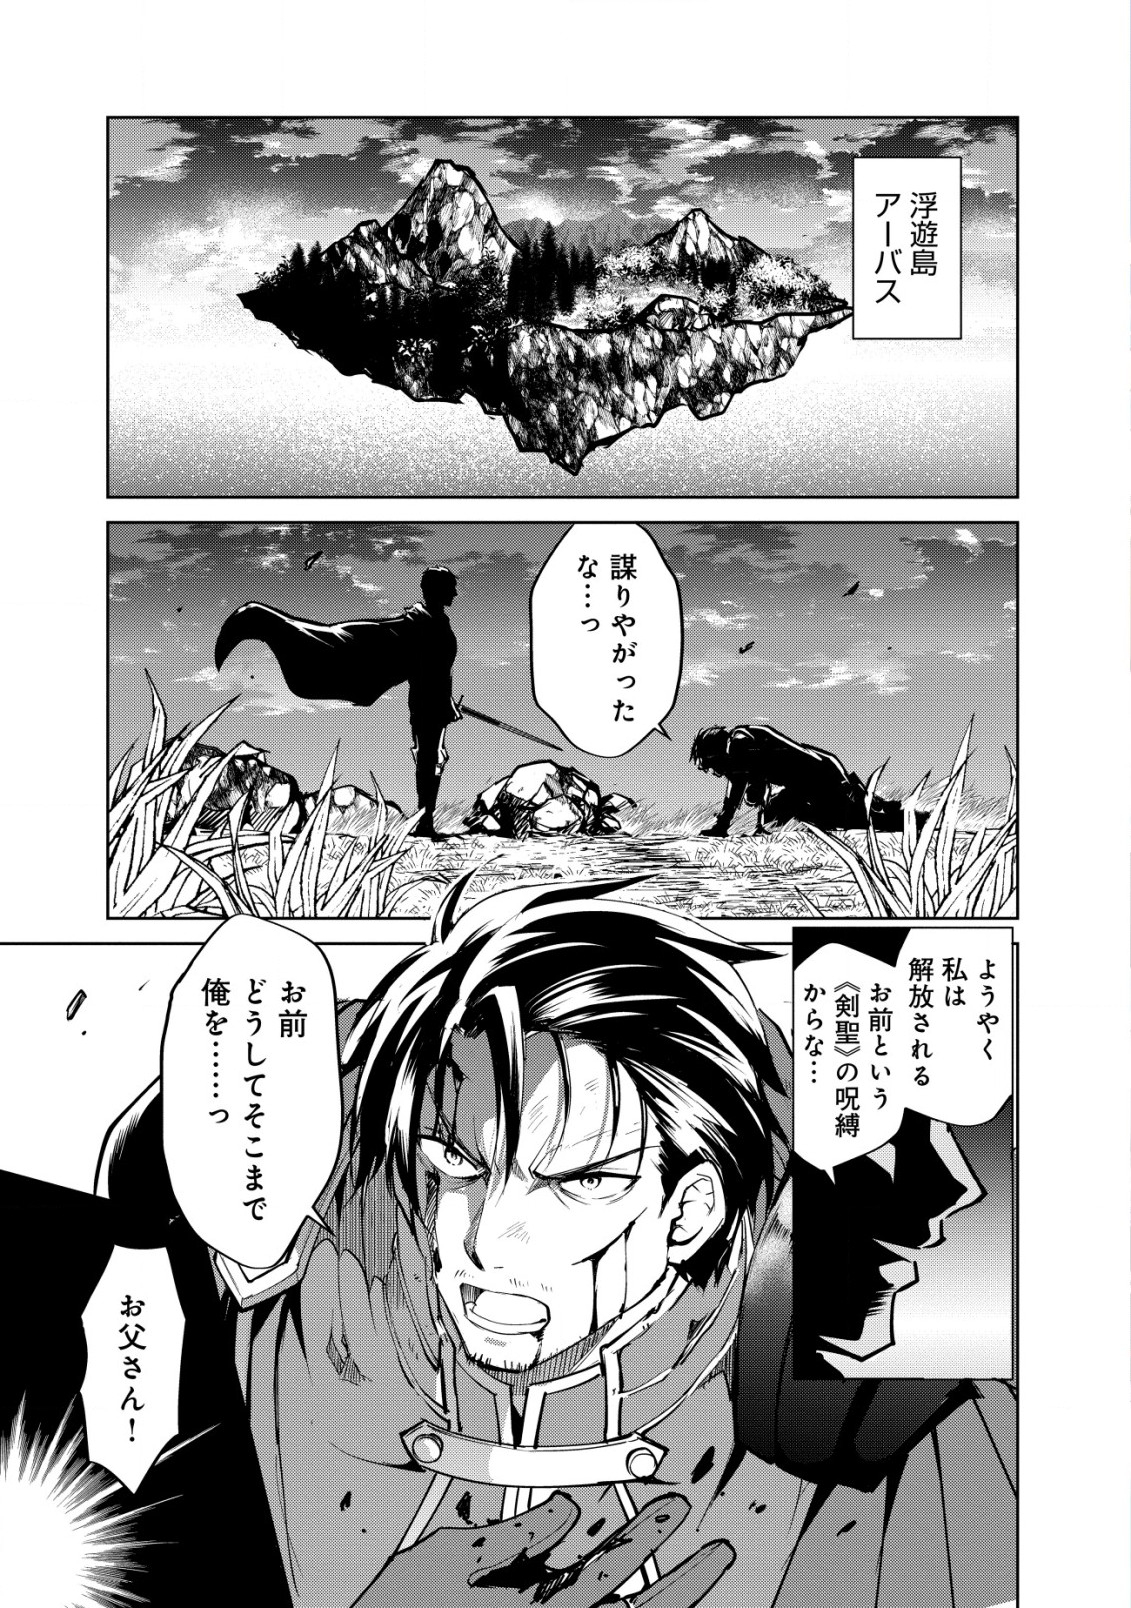 Ten to Chi to Hazama no Sekai Yelatium - Chapter 1 - Page 2